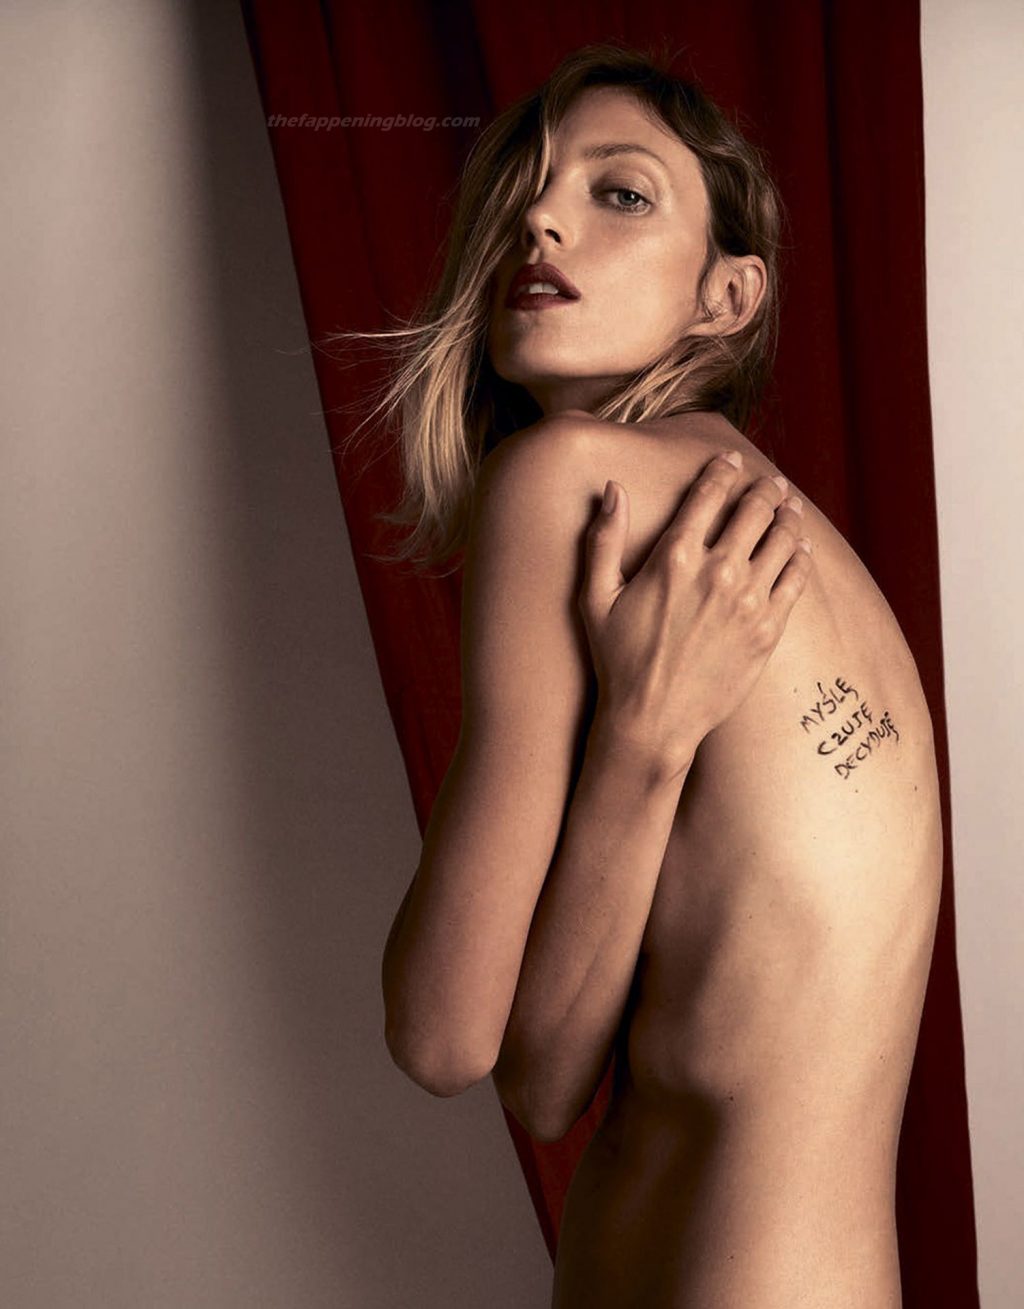 Anja Rubik Nude &amp; Sexy – Vogue Poland (13 Photos)